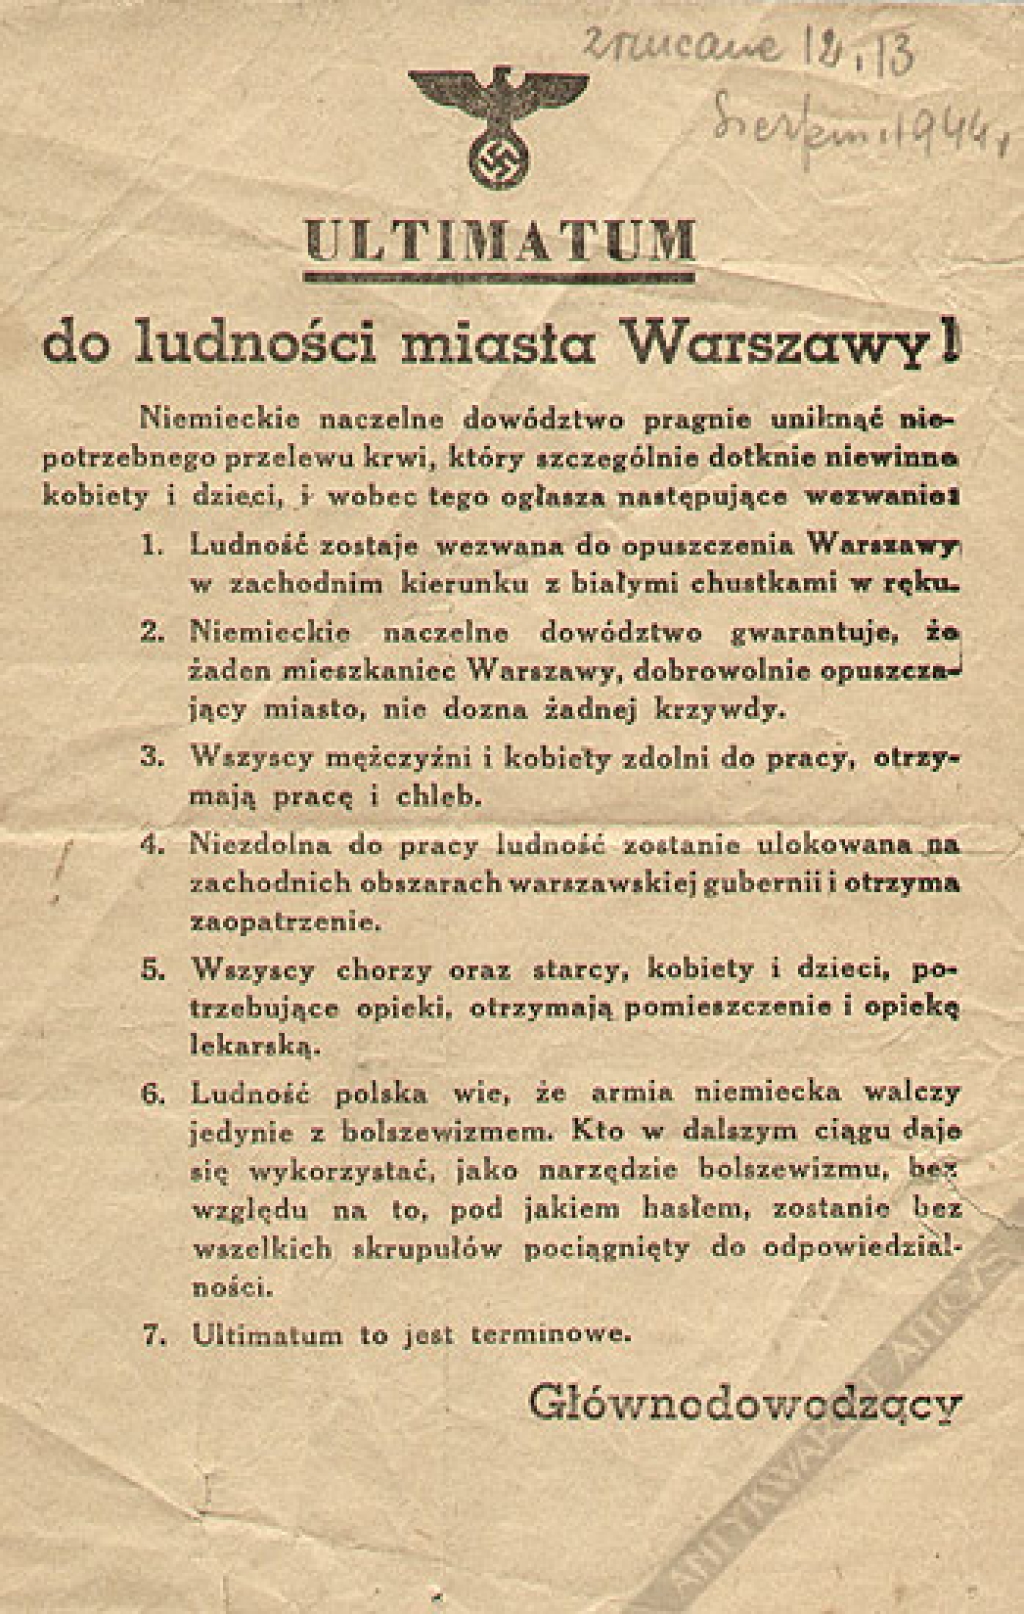 [ulotka z okresu Powstania Warszawskiego] Ultimatum do ludności miasta Warszawy! 